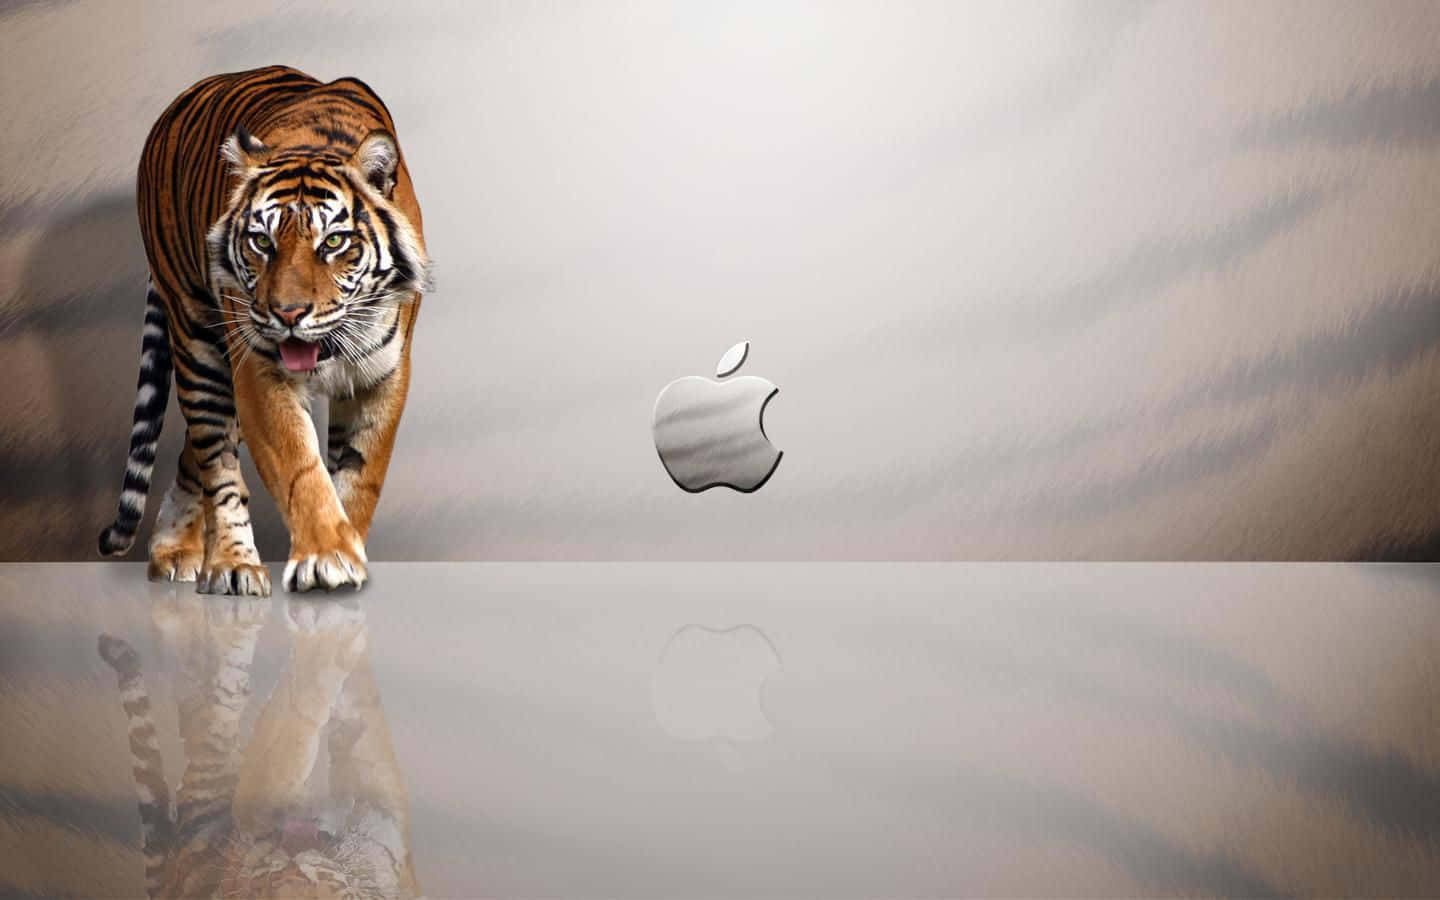 Download Cute Mac 1440 X 900 Wallpaper | Wallpapers.com